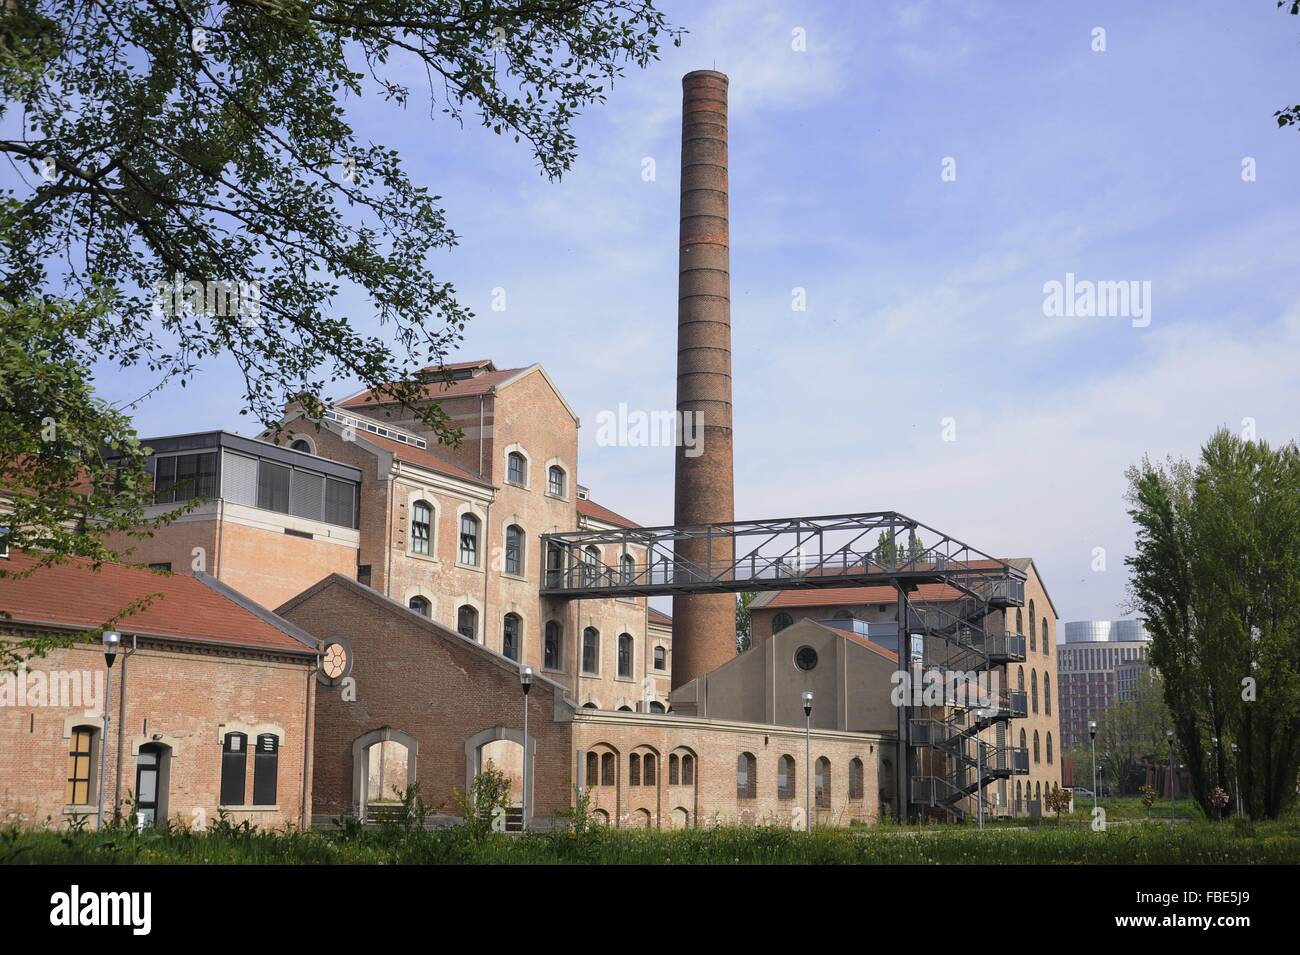 Université de Ferrara (Italie), site de la pôle scientifique et technologique dans le bâtiment industriel d'une ancienne fabrique de sucre Banque D'Images